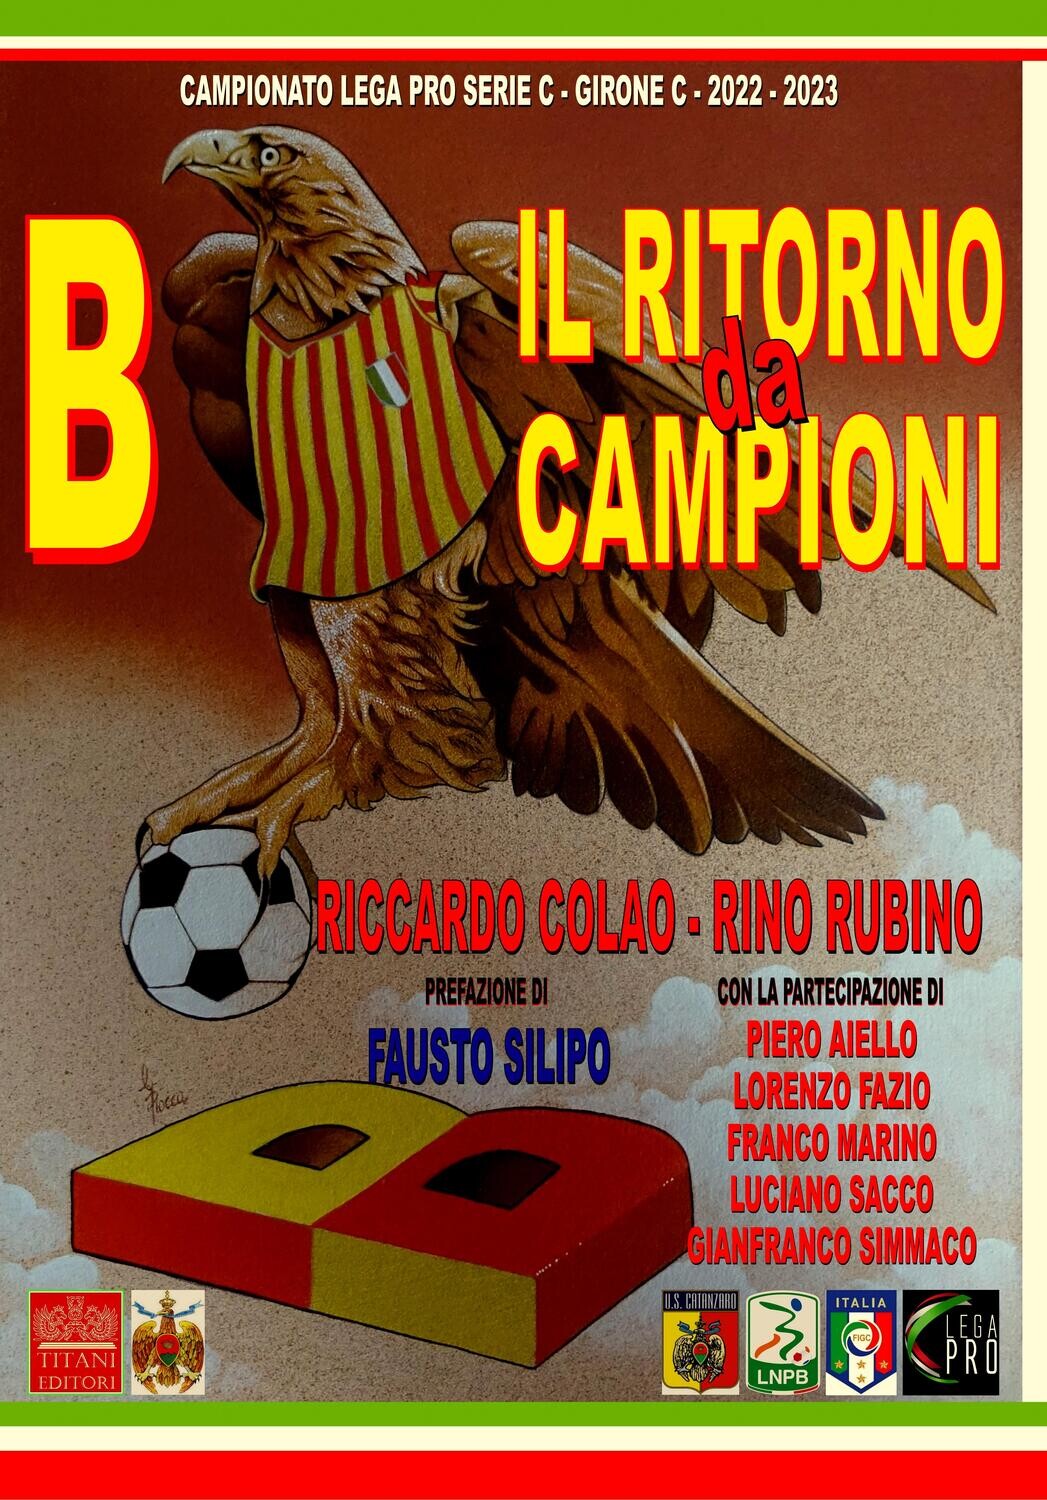 B IL RITORNO DA CAMPIONI - Riccardo Colao - Rino Rubino - Titani Editori